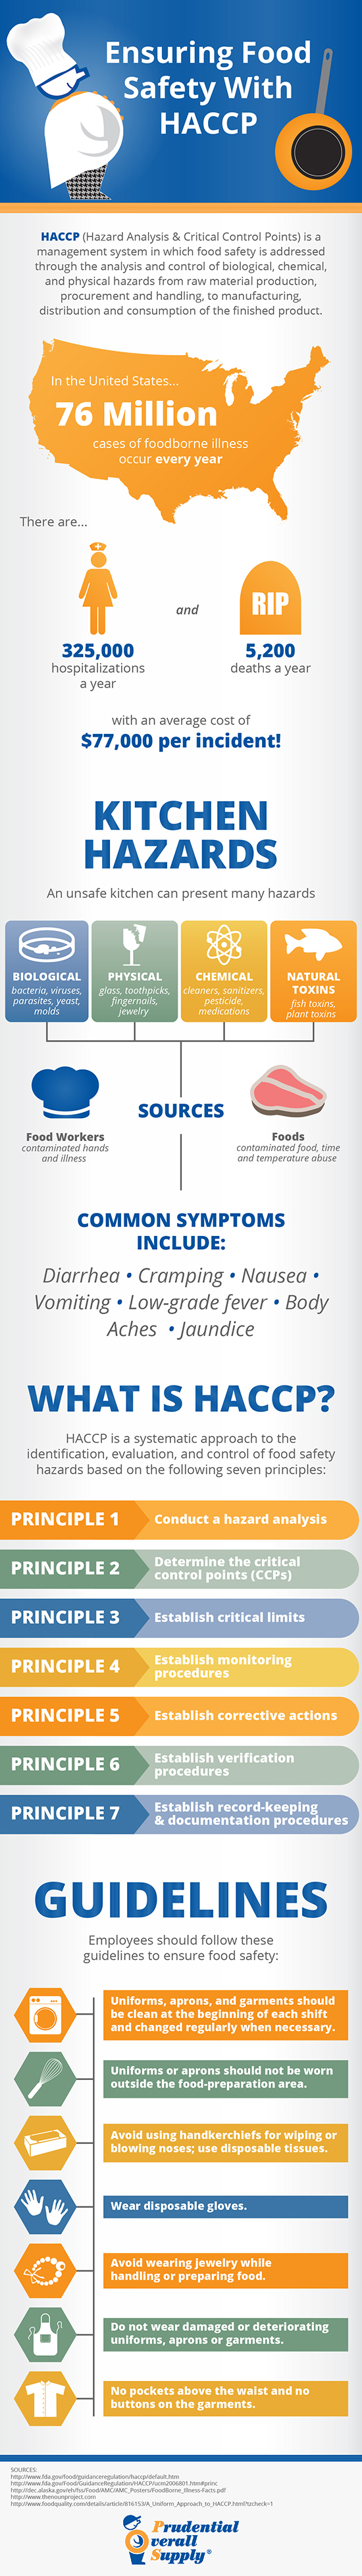 用HACCP确保食品安全